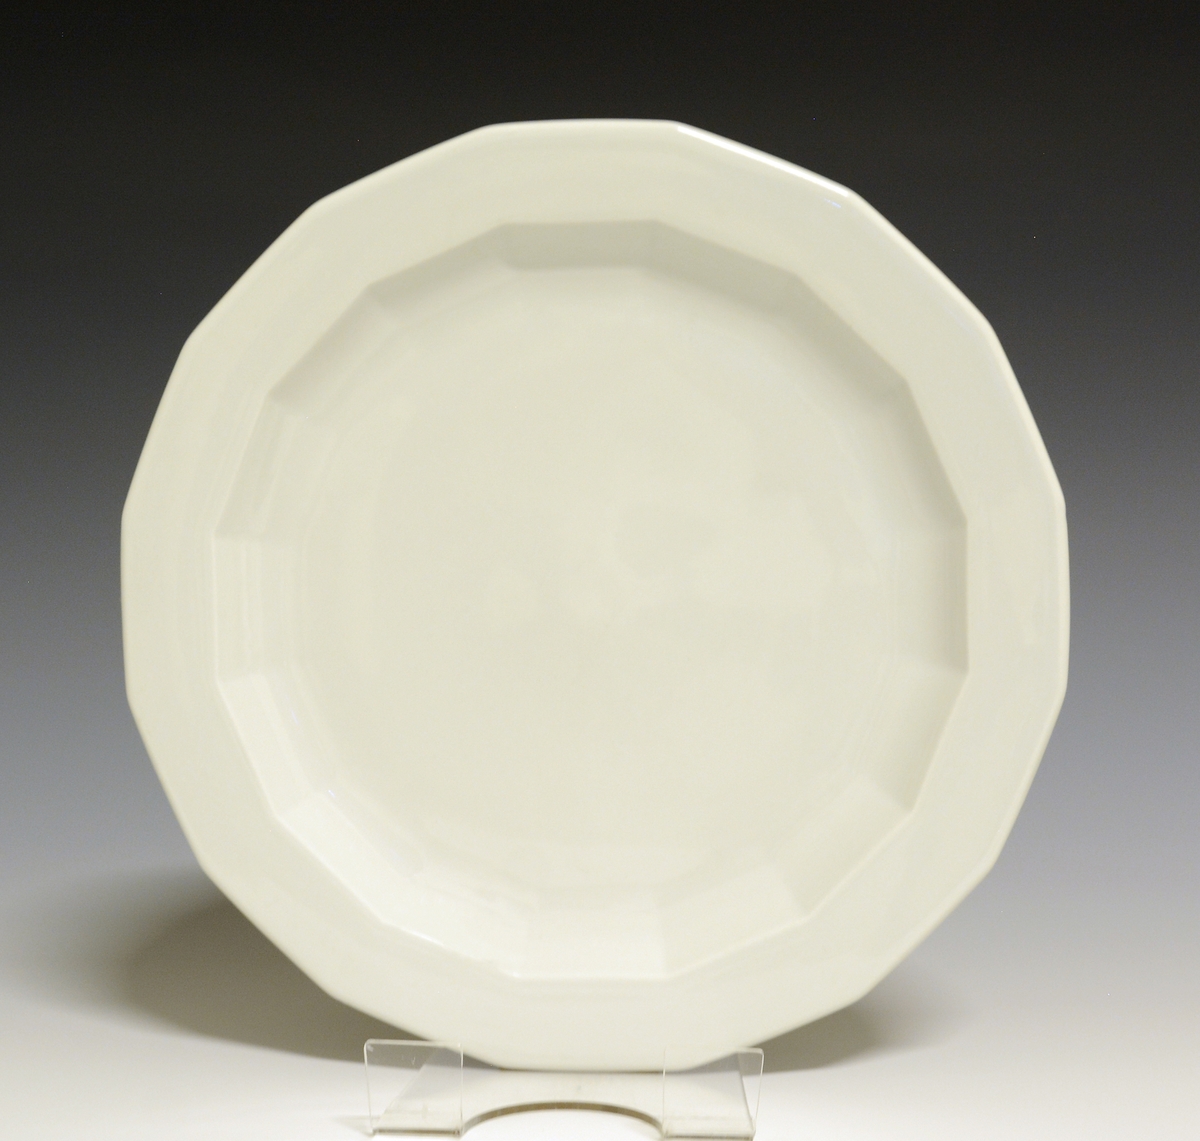 Mangekantet tallerken av porselen med hvit glasur. 
Modell: Octavia, tegnet av Grete Rønning i 1977.